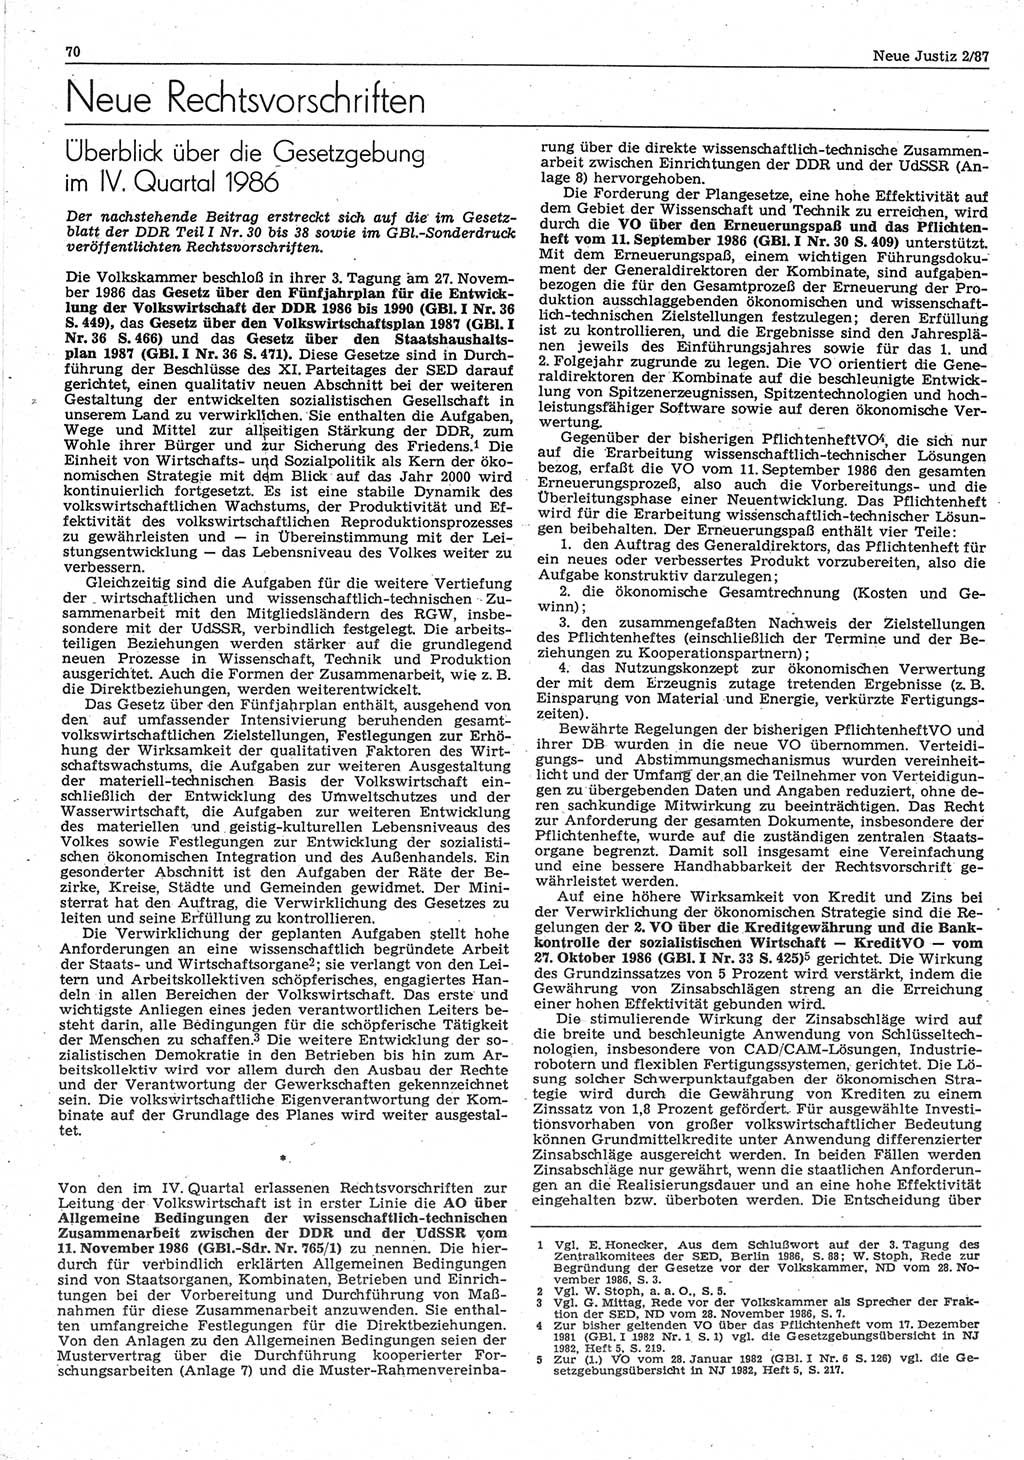 Neue Justiz (NJ), Zeitschrift für sozialistisches Recht und Gesetzlichkeit [Deutsche Demokratische Republik (DDR)], 41. Jahrgang 1987, Seite 70 (NJ DDR 1987, S. 70)